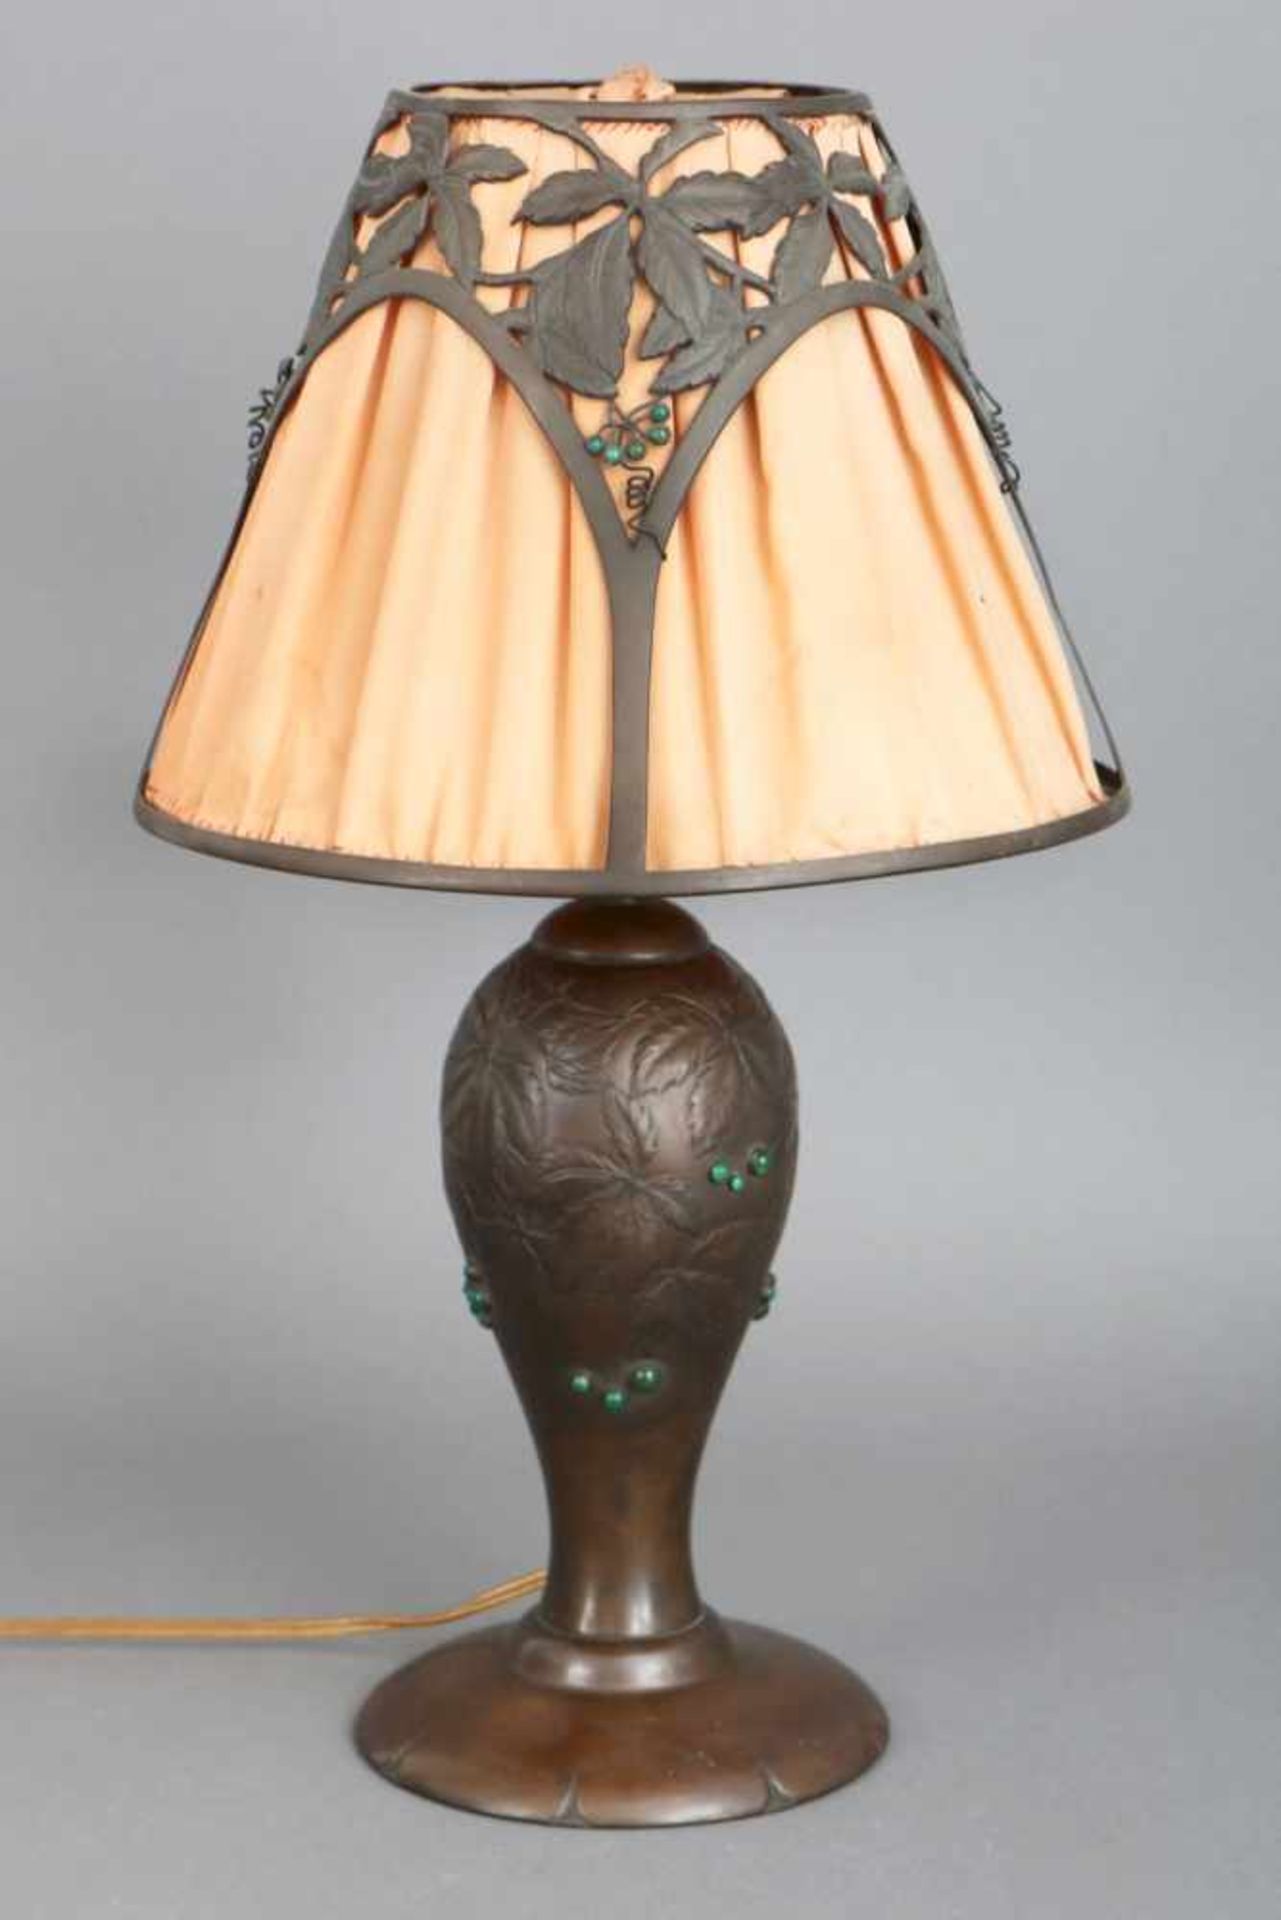 Tischlampe, Jugendstilwohl USA um 1910, vasenförmiger Fuß, Messing und Zink, brüniert, mit